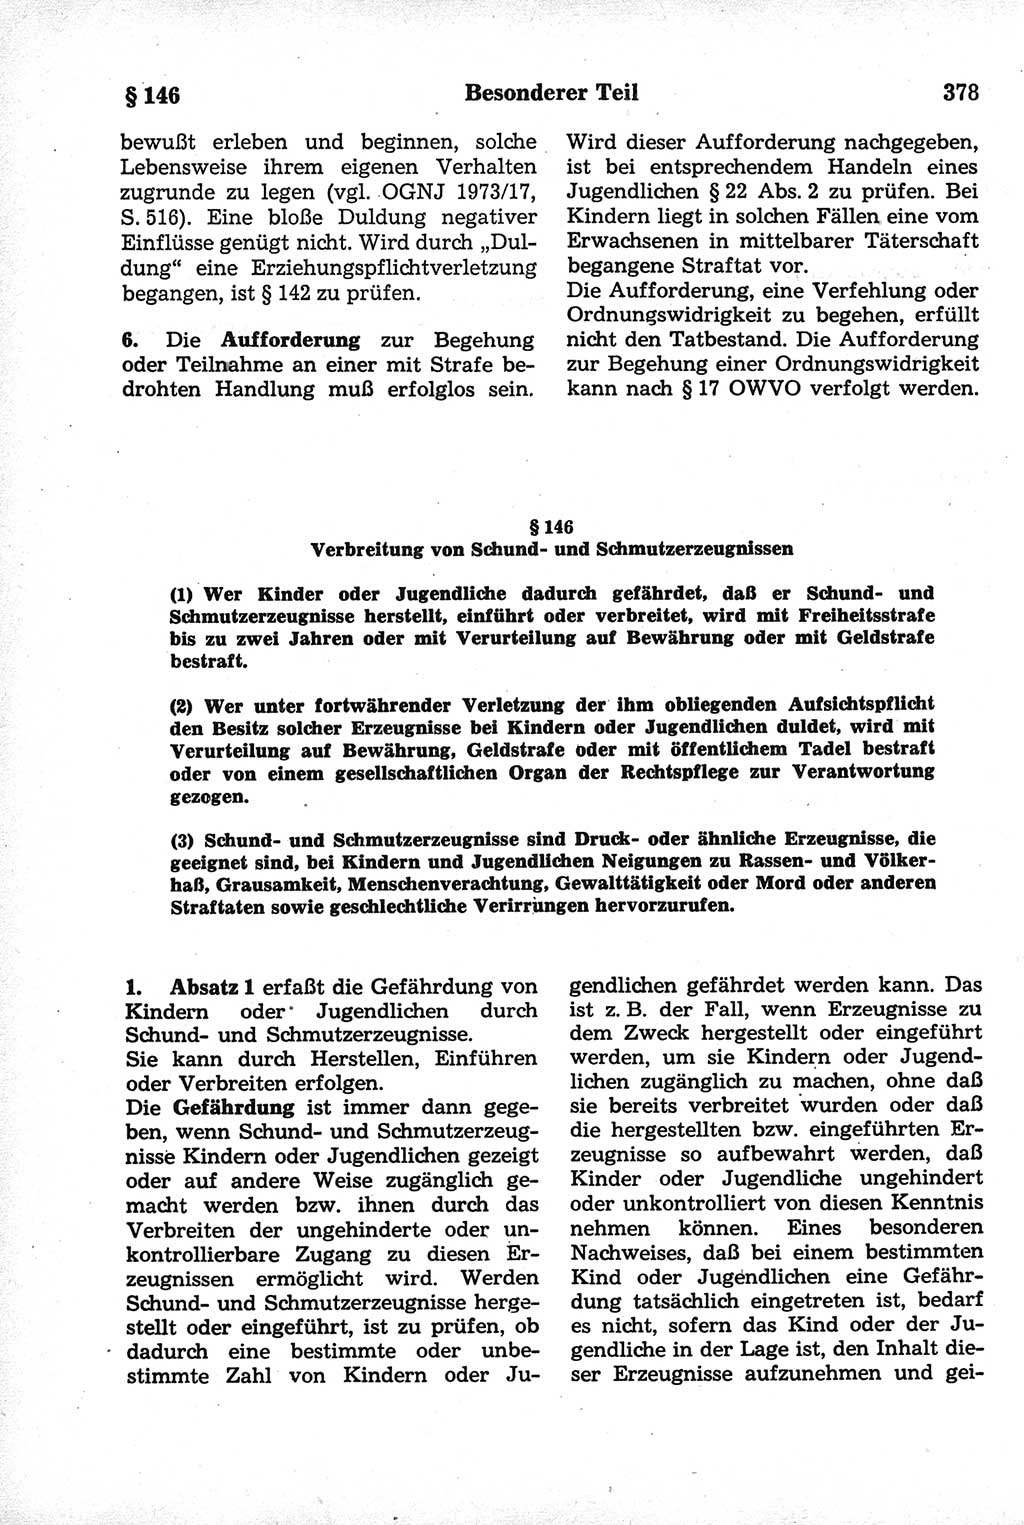 Strafrecht der Deutschen Demokratischen Republik (DDR), Kommentar zum Strafgesetzbuch (StGB) 1981, Seite 378 (Strafr. DDR Komm. StGB 1981, S. 378)